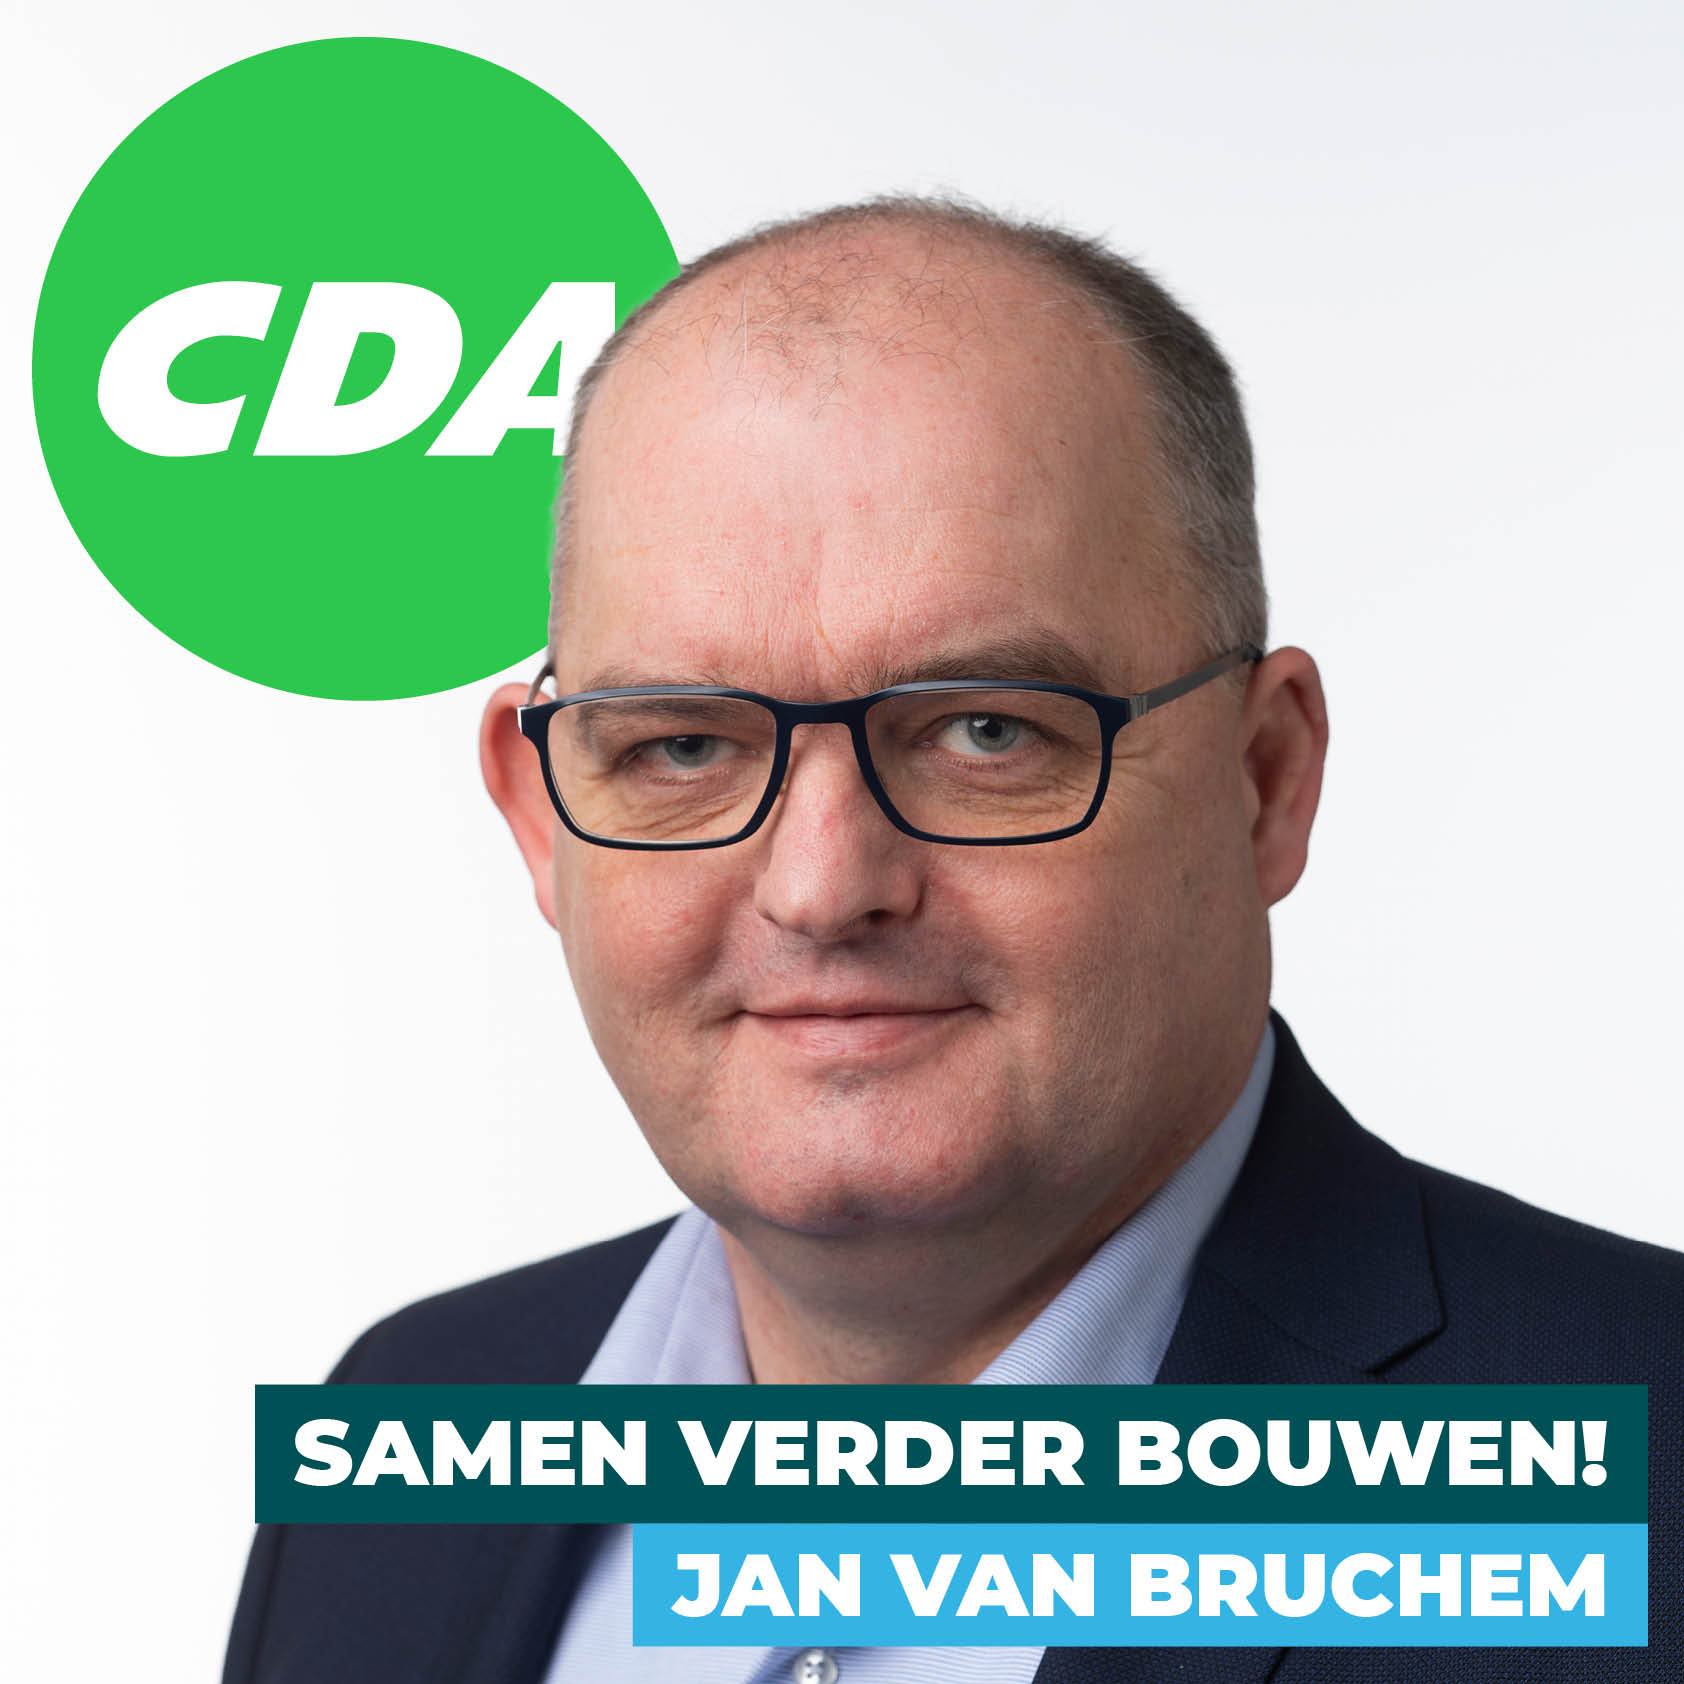 Jan van Bruchem